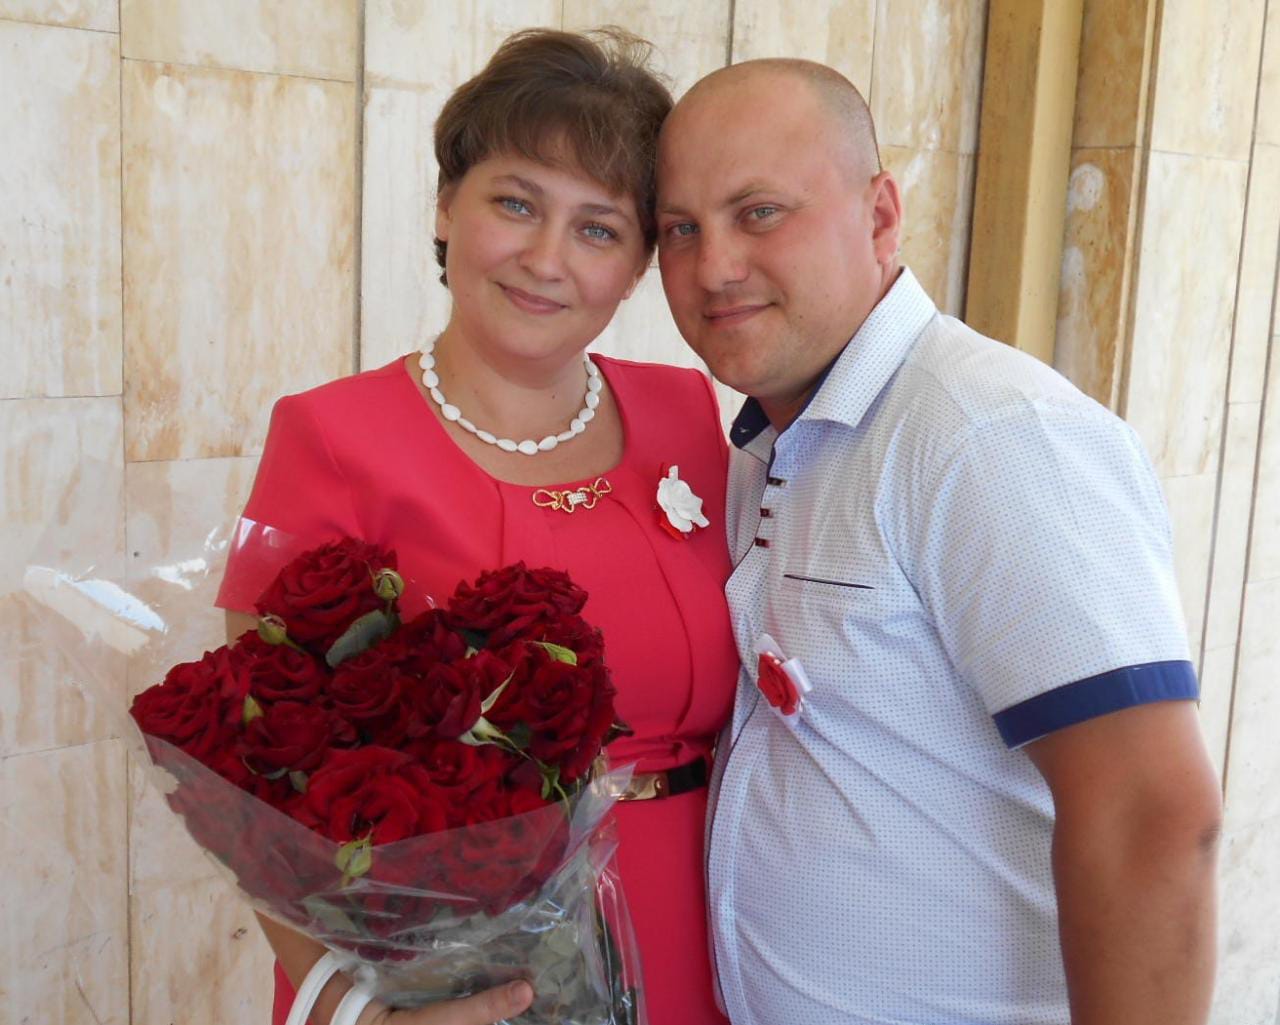 Клышникова Евгения вместе со своей большой семьей становятся первыми участниками конкурса «Дарите женщинам цветы!»